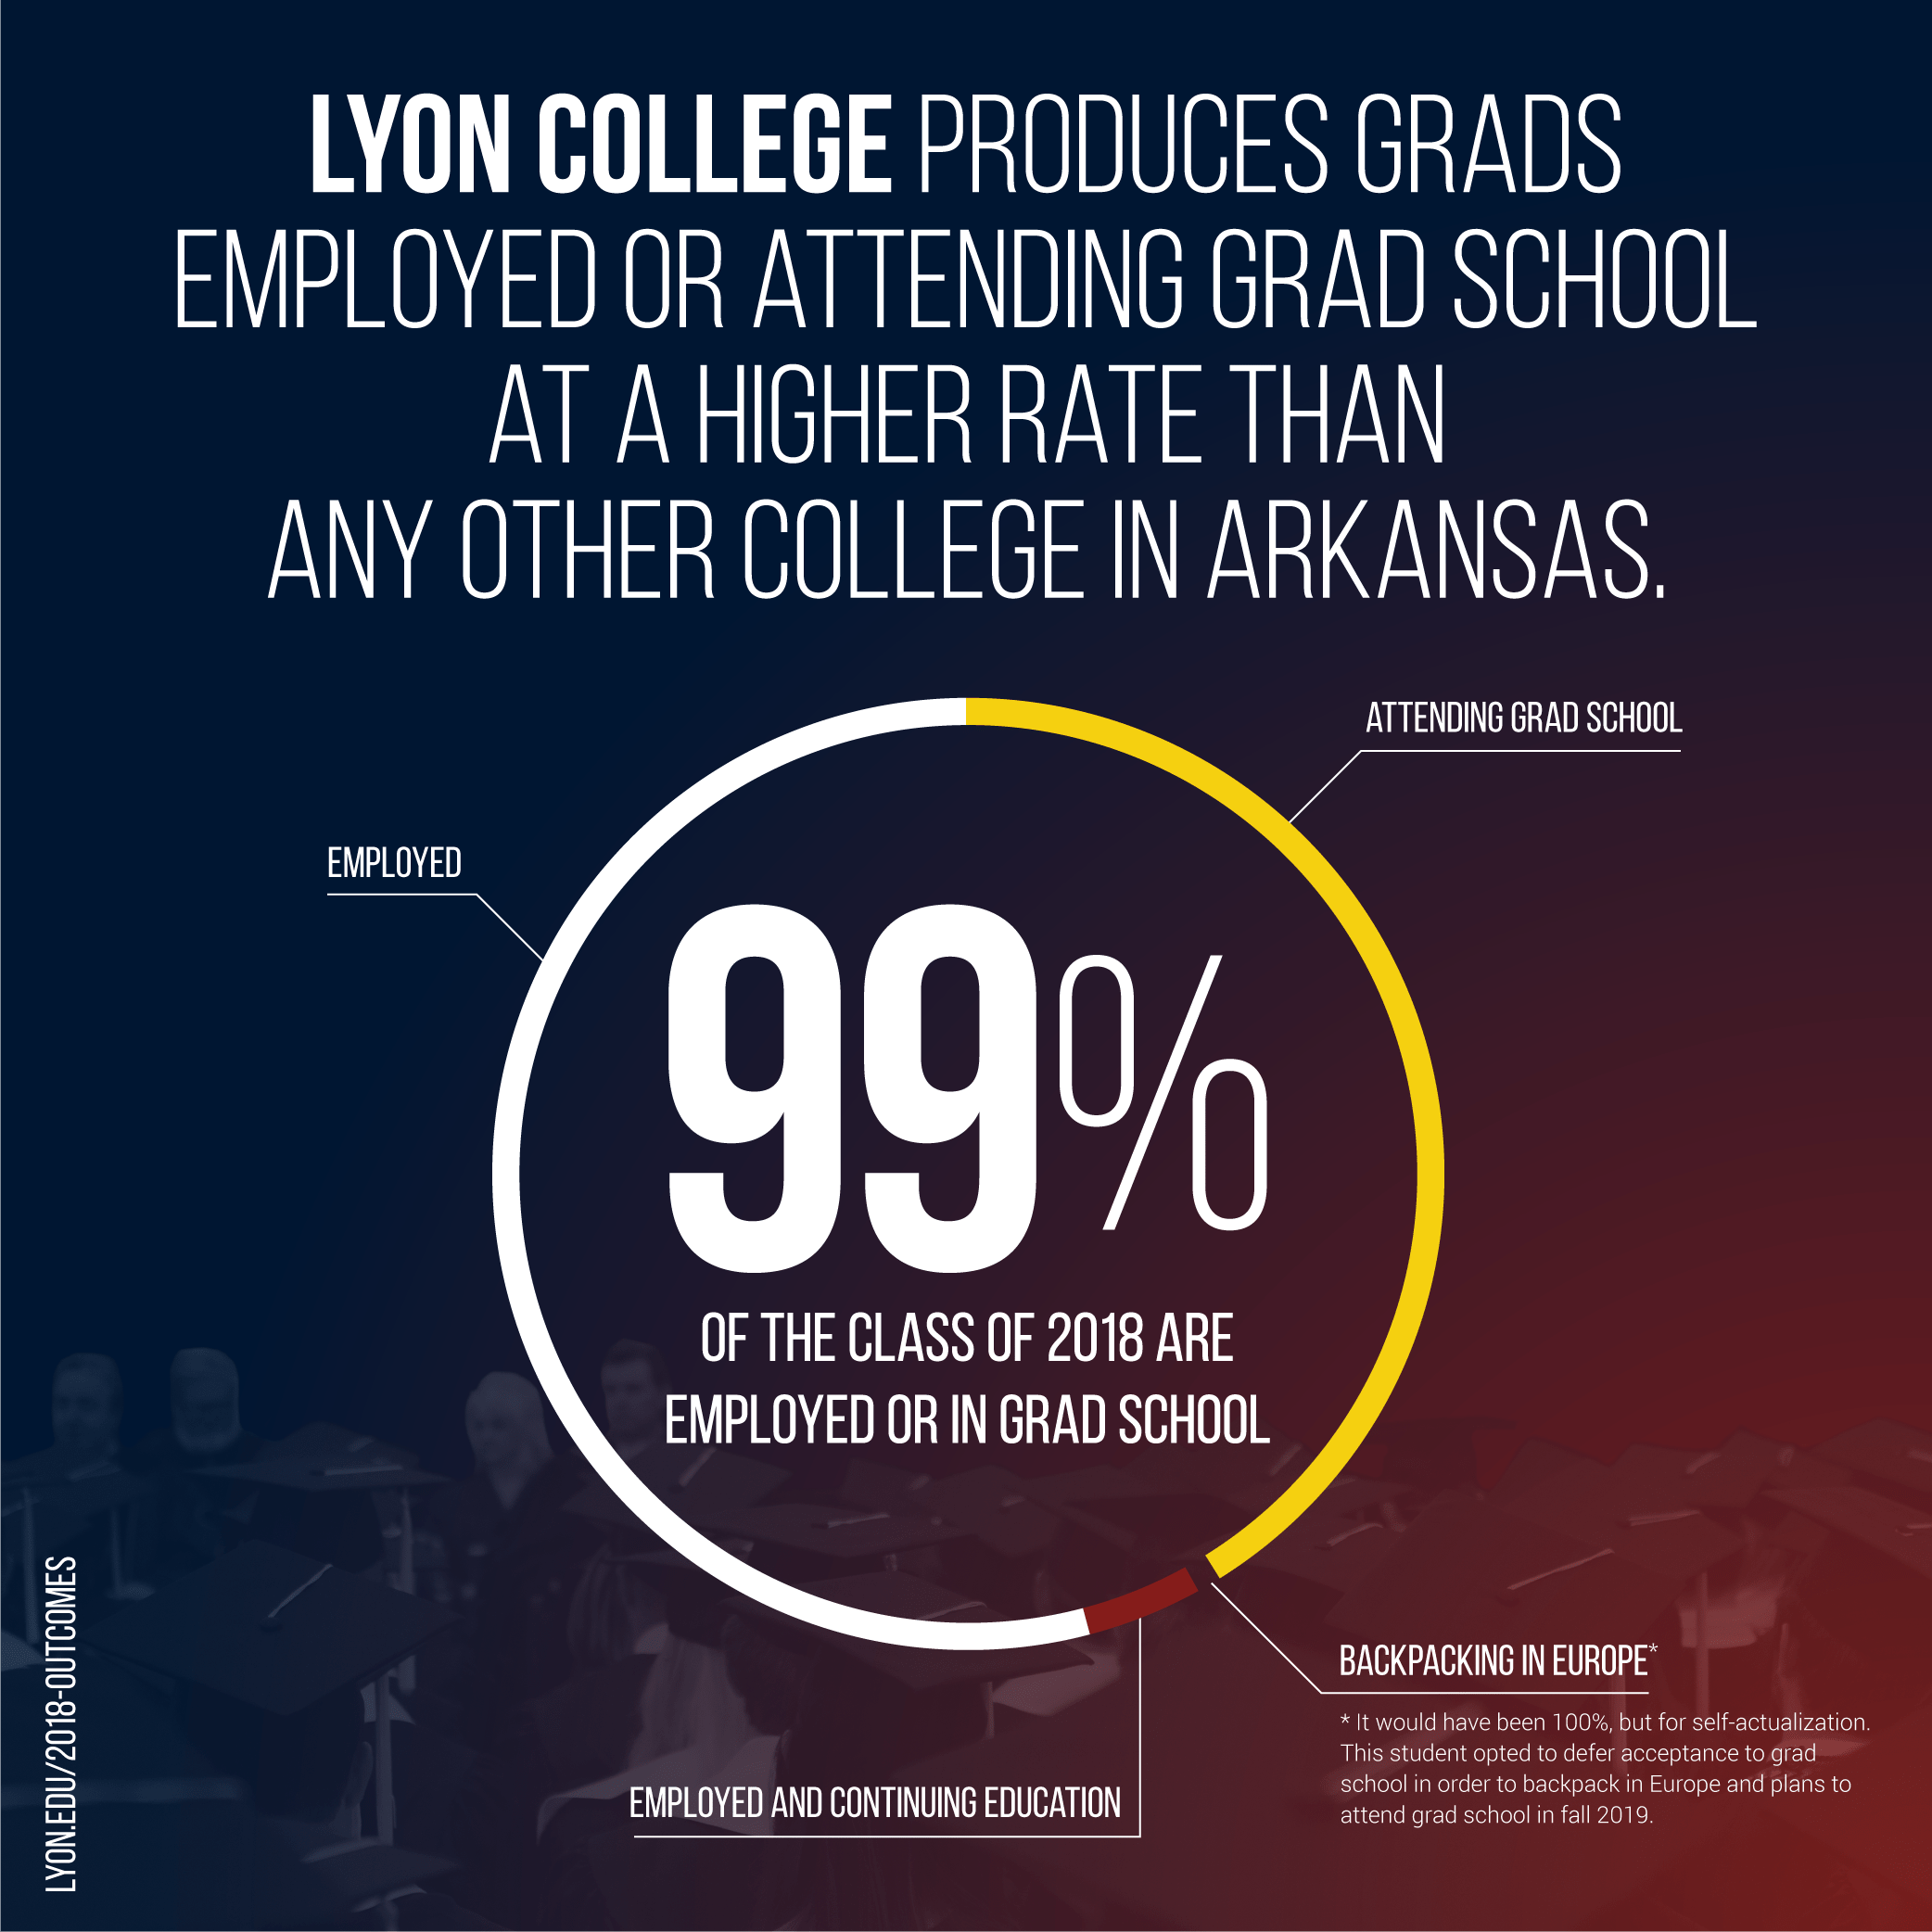 LyonCollege-2018-outcomes-99%-02.jpeg